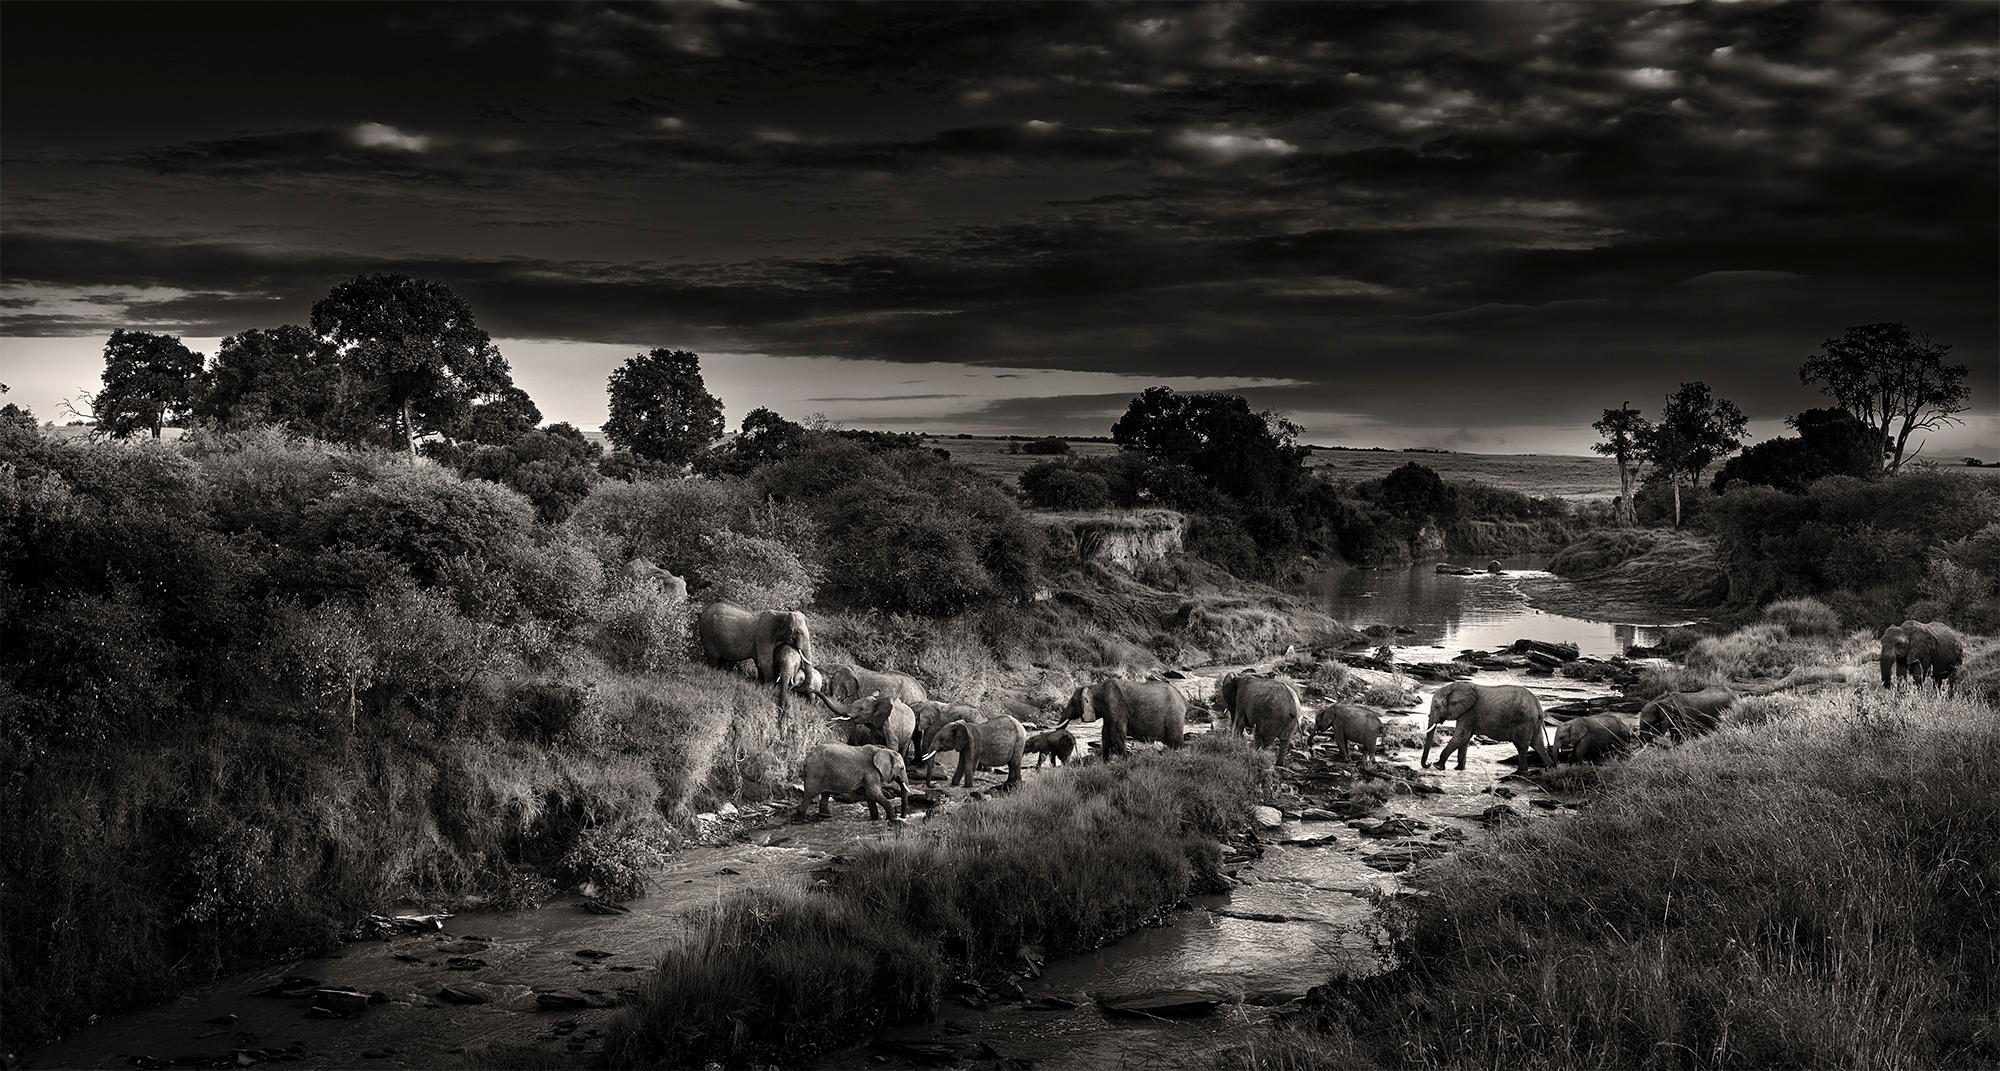 Black and White Photograph Joachim Schmeisser - Croix dramatique, animal, faune sauvage, photographie d'éléphant en noir et blanc